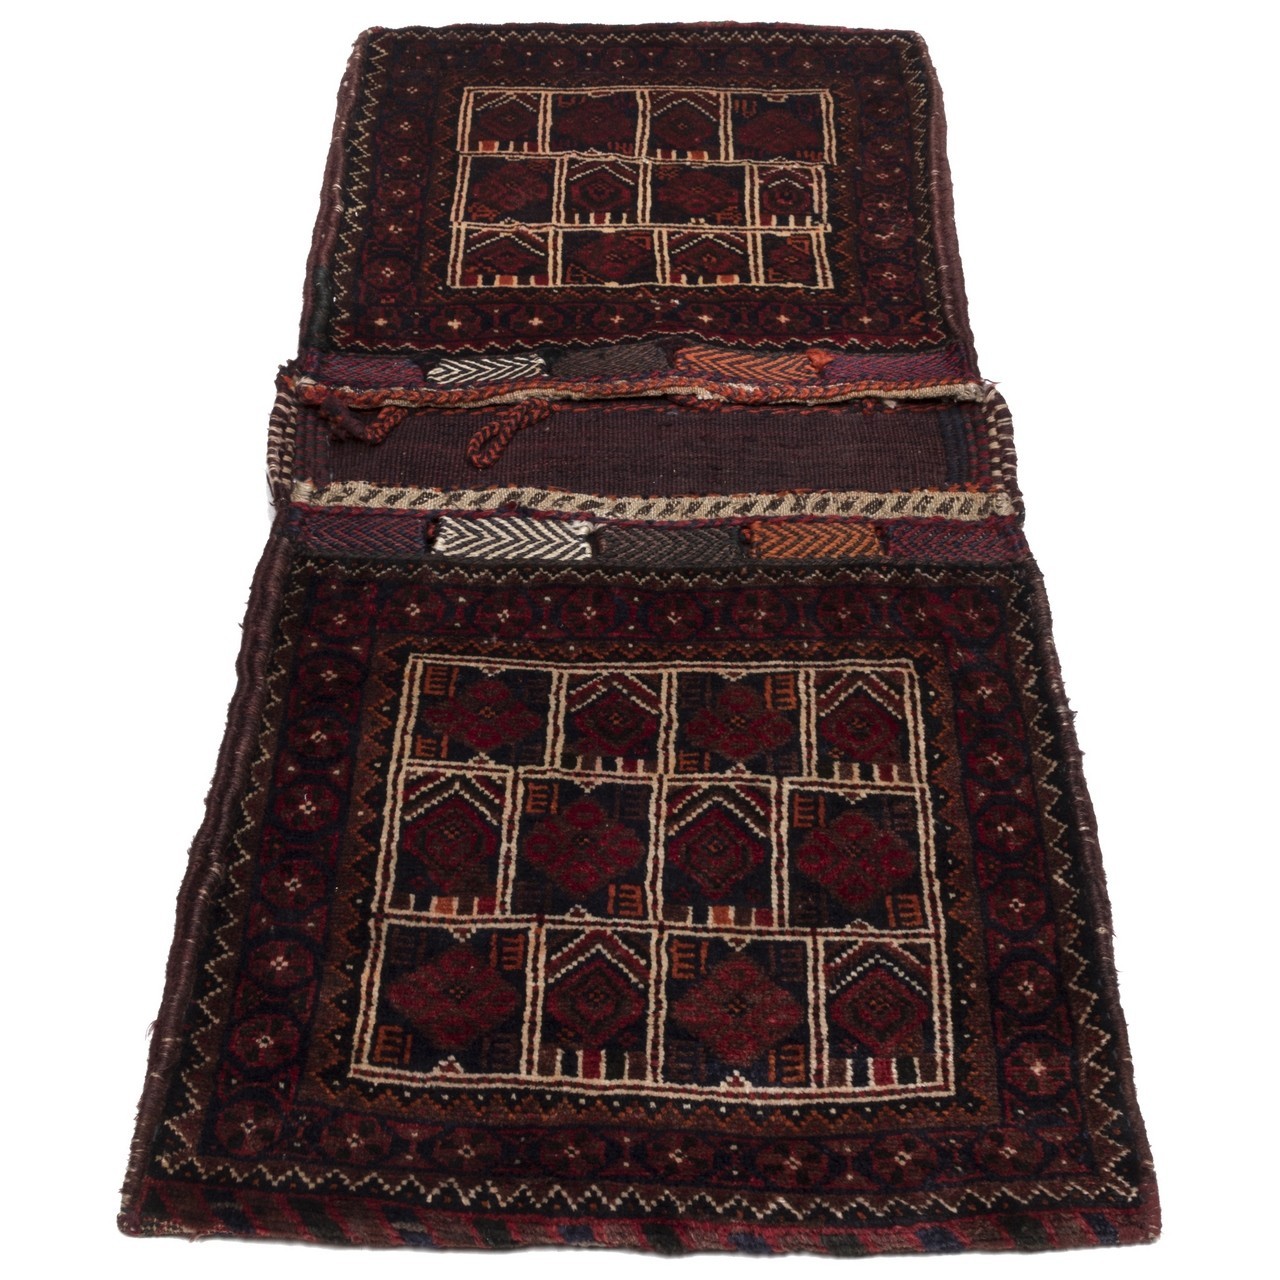 鞍囊 伊朗手工地毯编号 169018